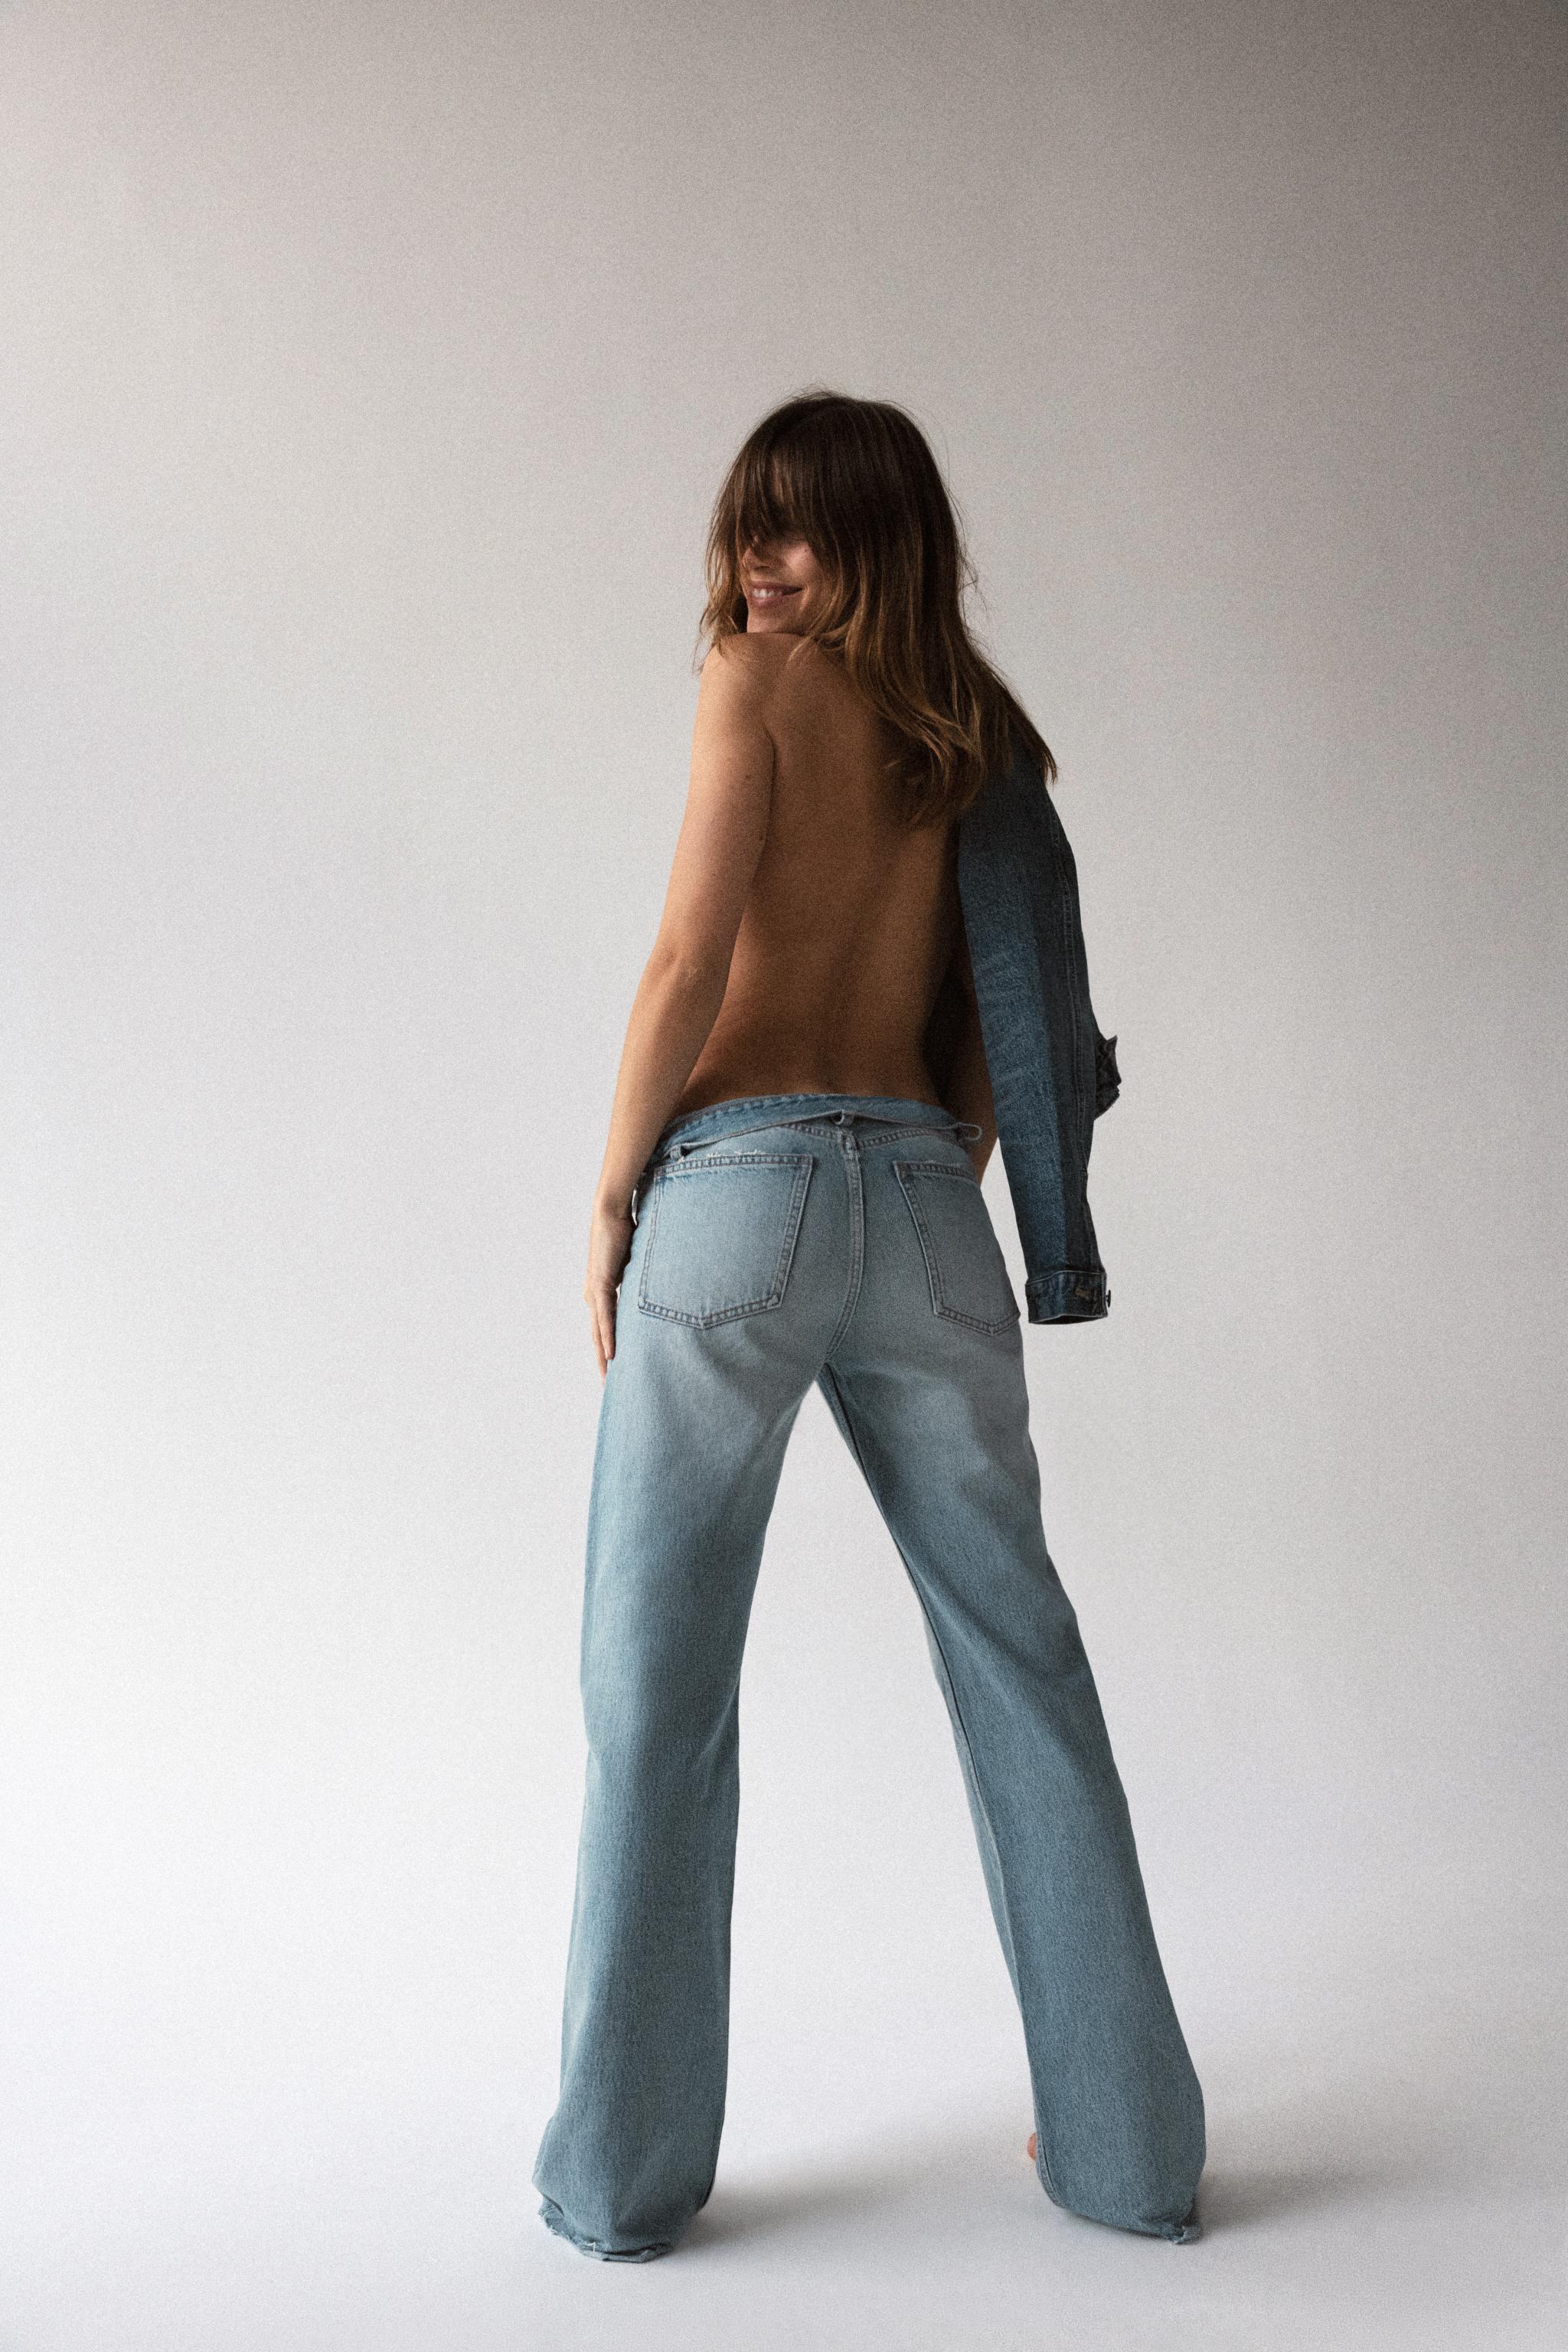 Women's Wide Leg Jeans, Explore our New Arrivals